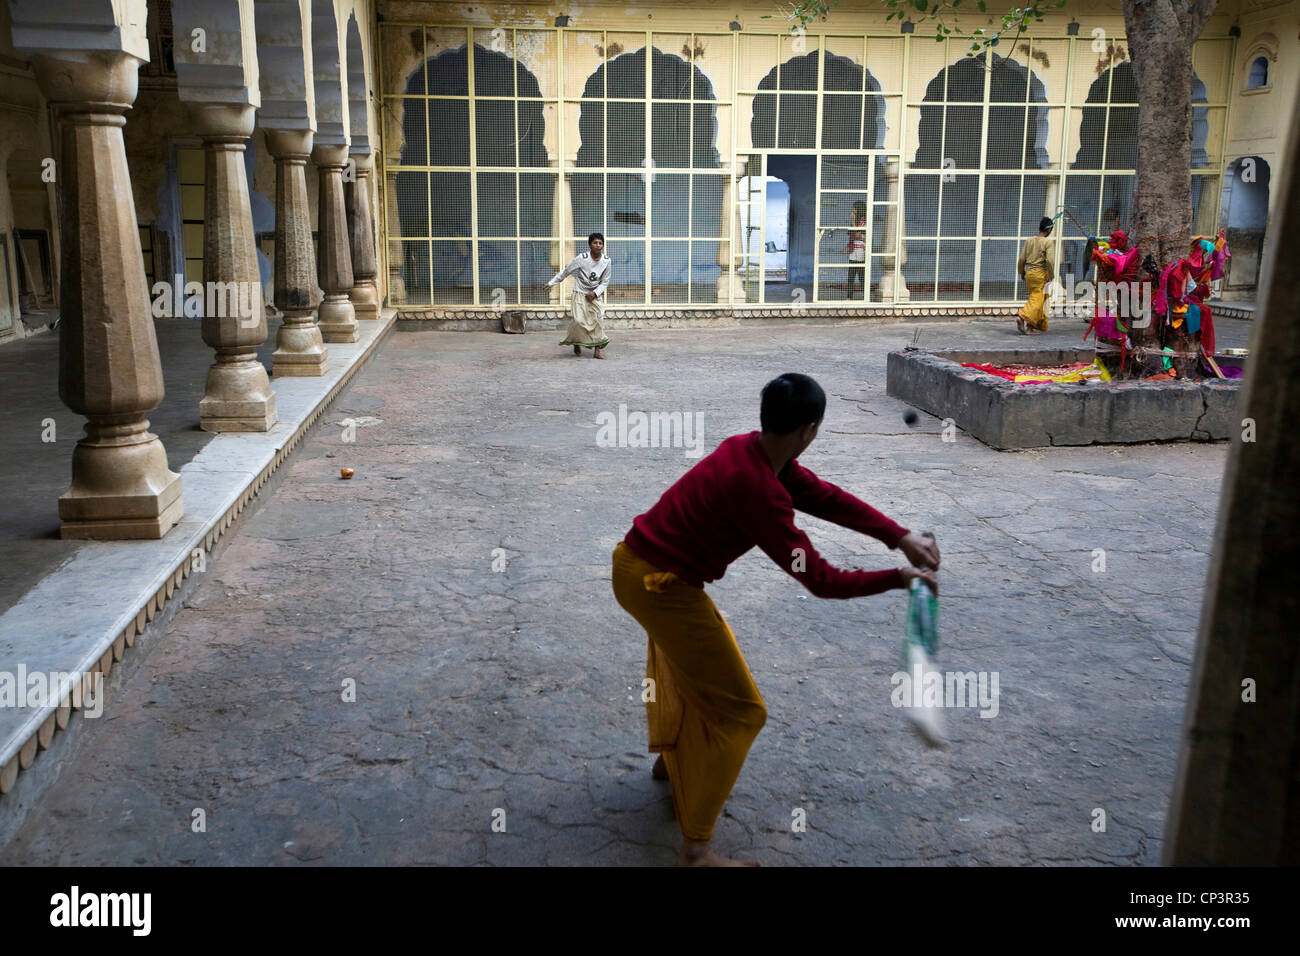 Los chicos jugar cricket dentro de uno de los edificios de la Surya Mandir (conocido como el Templo del mono), Jaipur, India Foto de stock